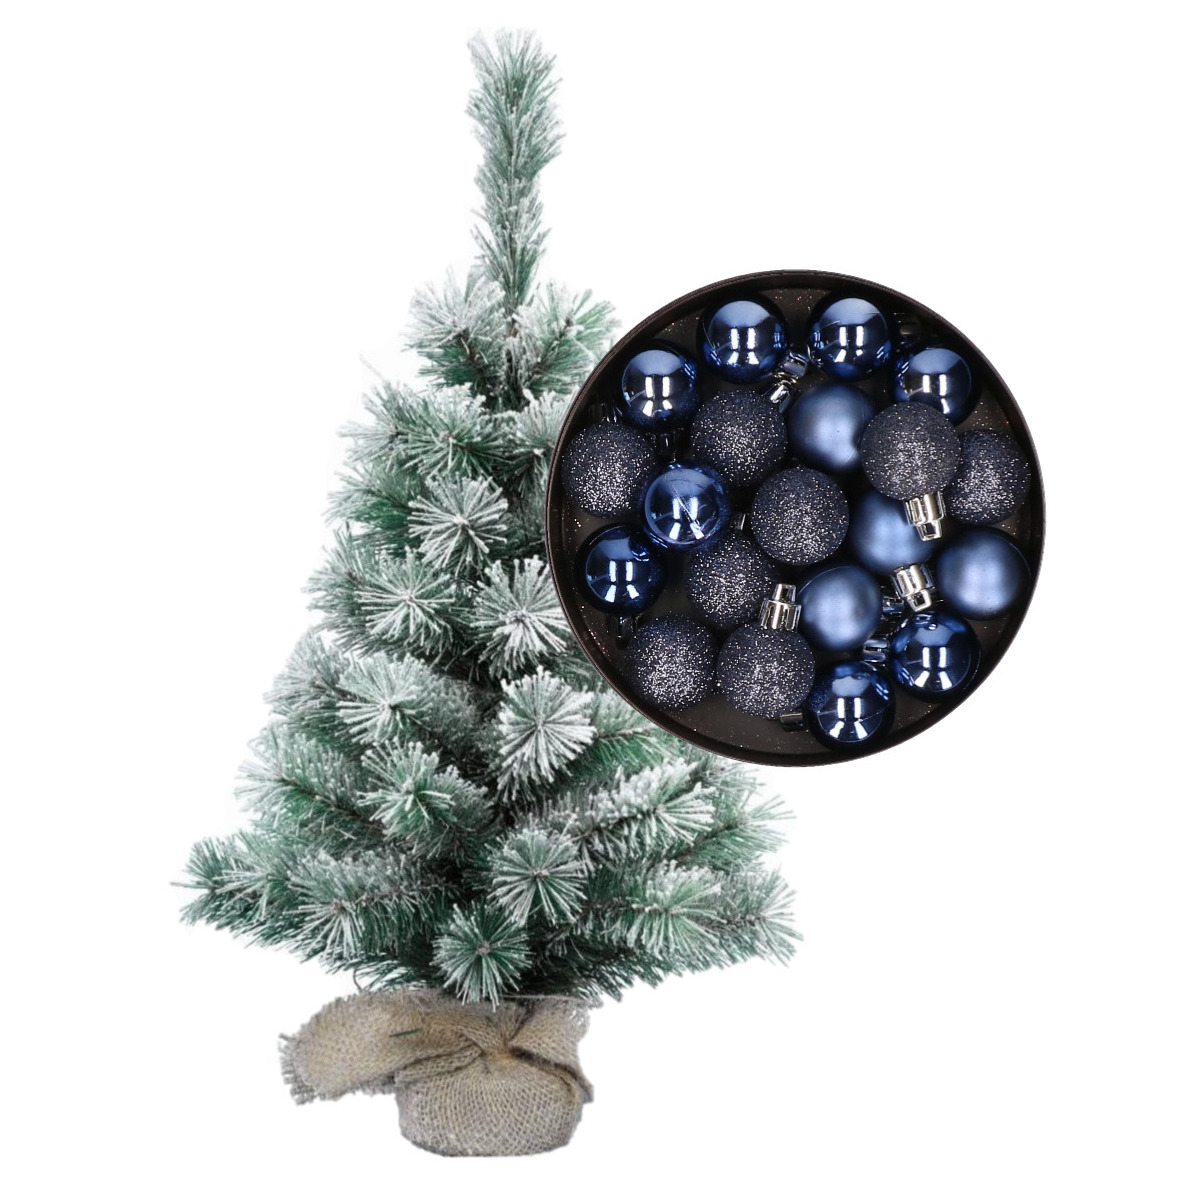 Besneeuwde mini kerstboom-kunst kerstboom 35 cm met kerstballen donkerblauw